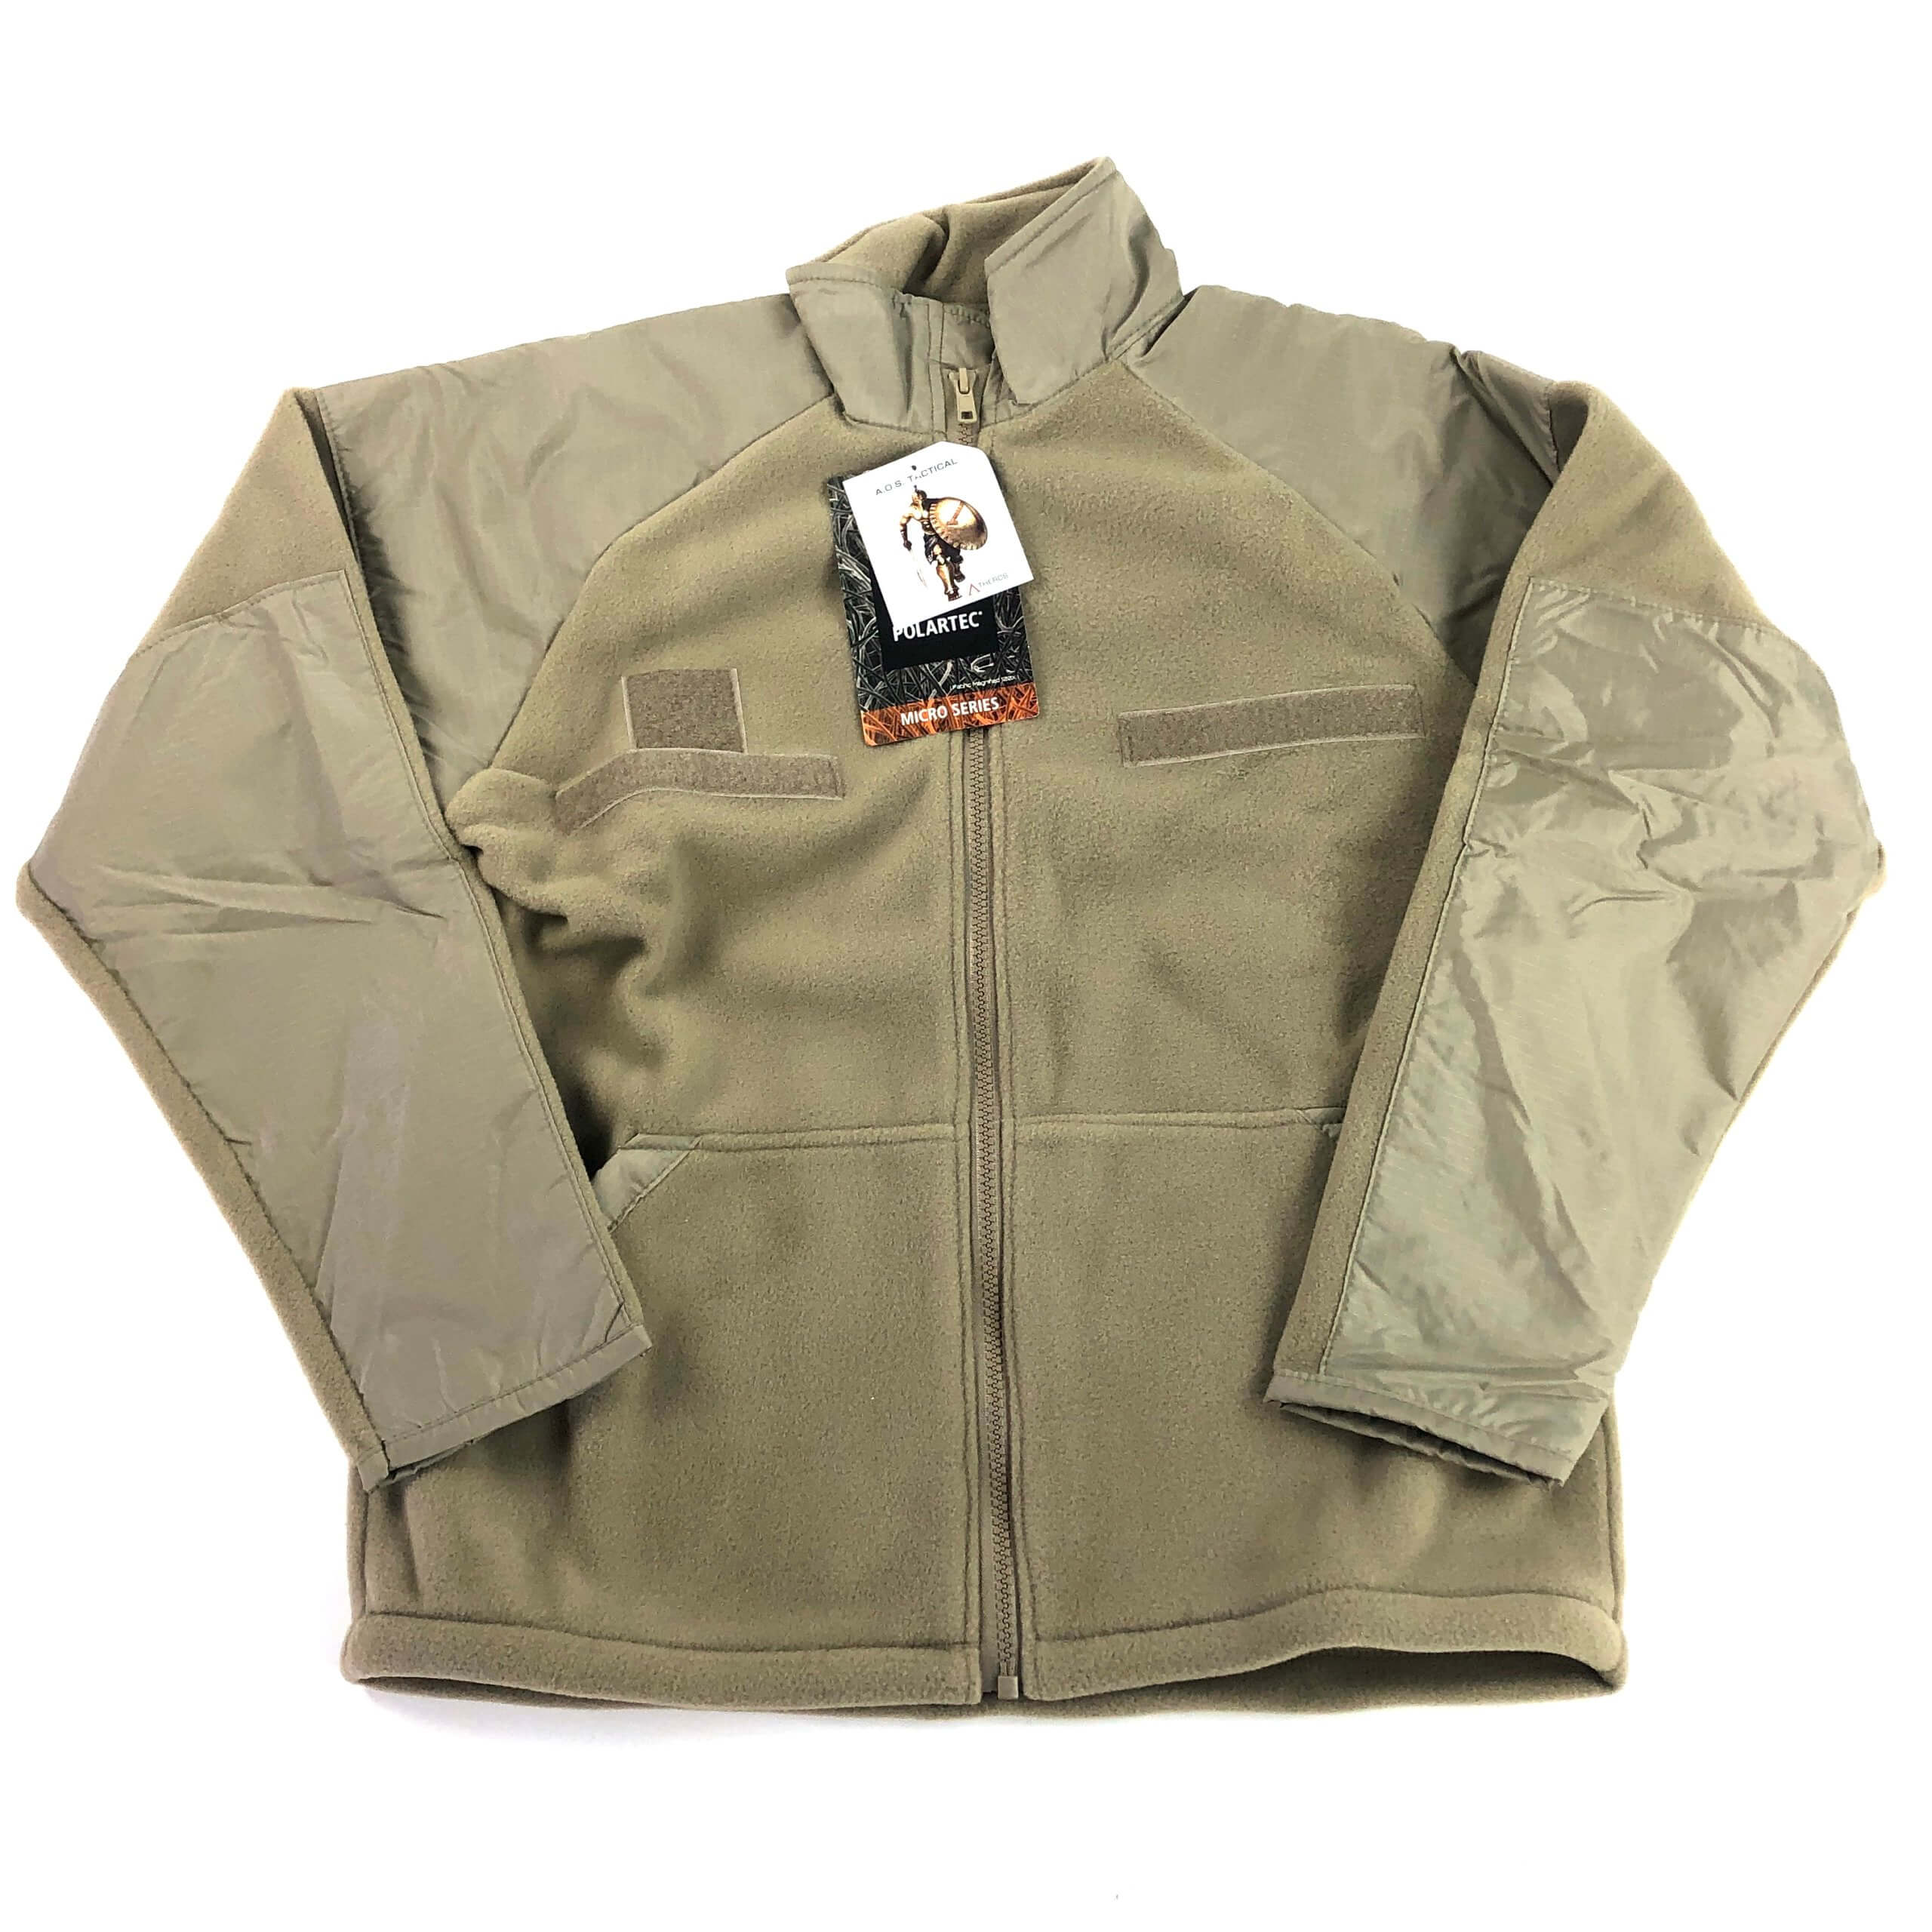 AOS Polartec Micro Fleece Level III Jacket, Tan